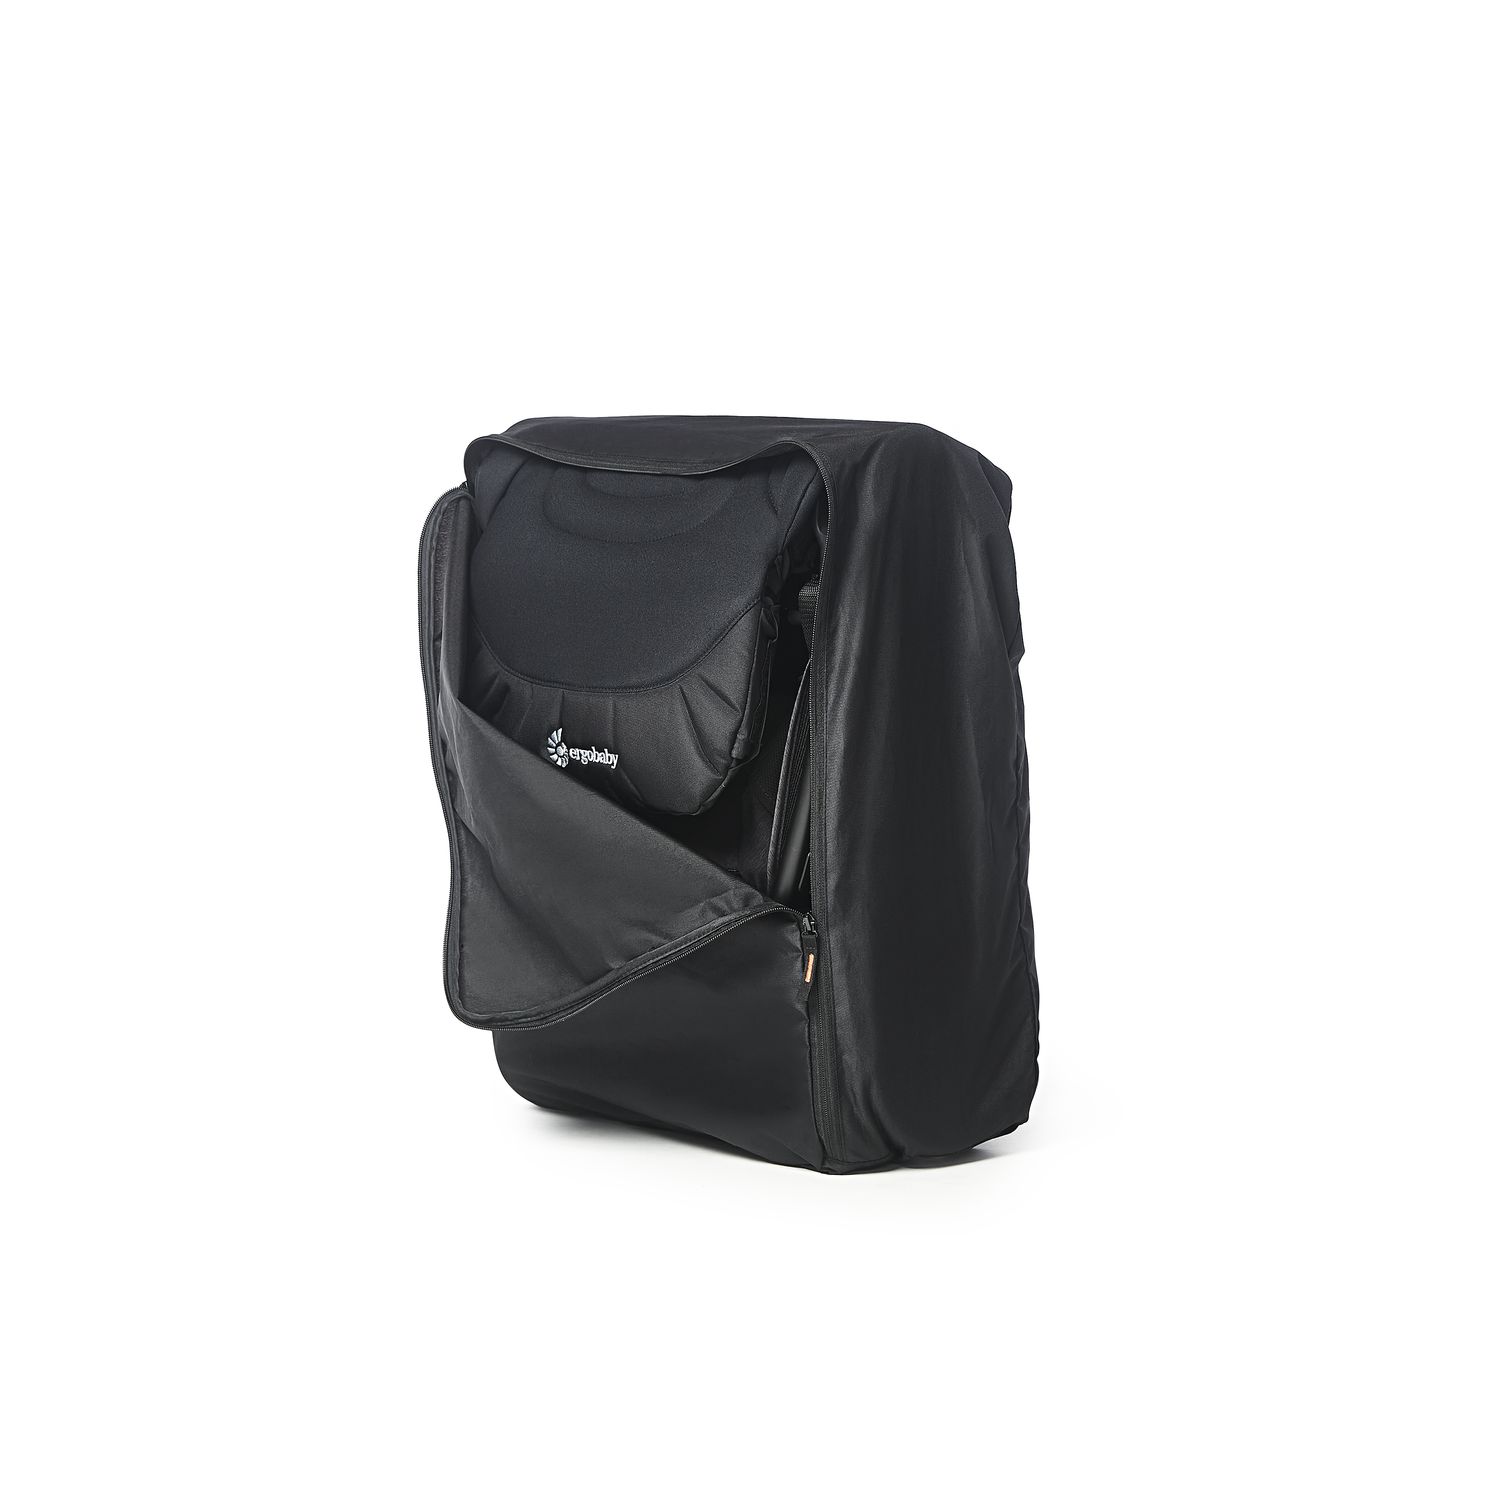 Рюкзак-сумка для транспортировки коляски Ergobaby Metro+ Carry Bag